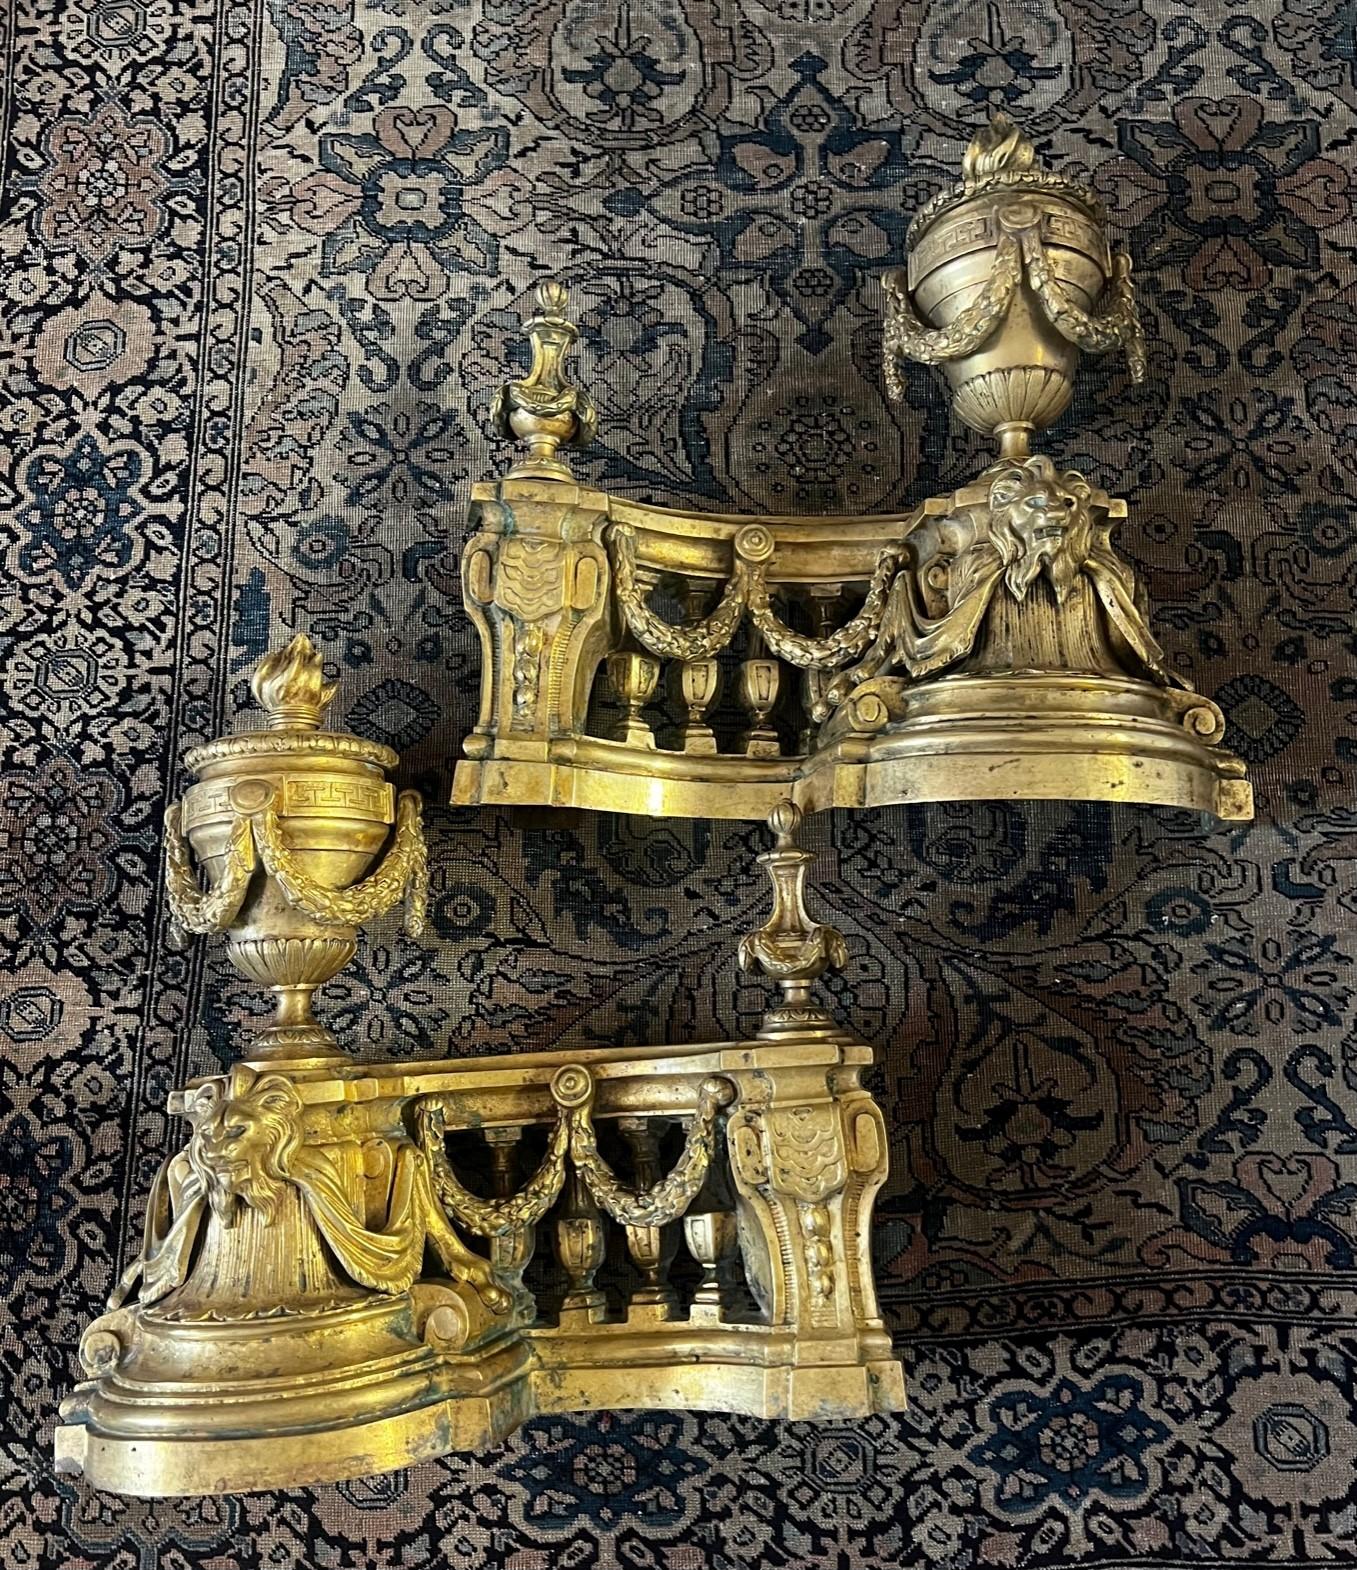 Dieses wunderbare Paar französischer vergoldeter Chenets aus Bbronze aus dem 18. Jahrhundert. Die Feuerhunde sind außergewöhnlich und meisterhaft aus geschnitzter und vergoldeter Bronze gefertigt, mit extravaganten dekorativen Elementen, die in der